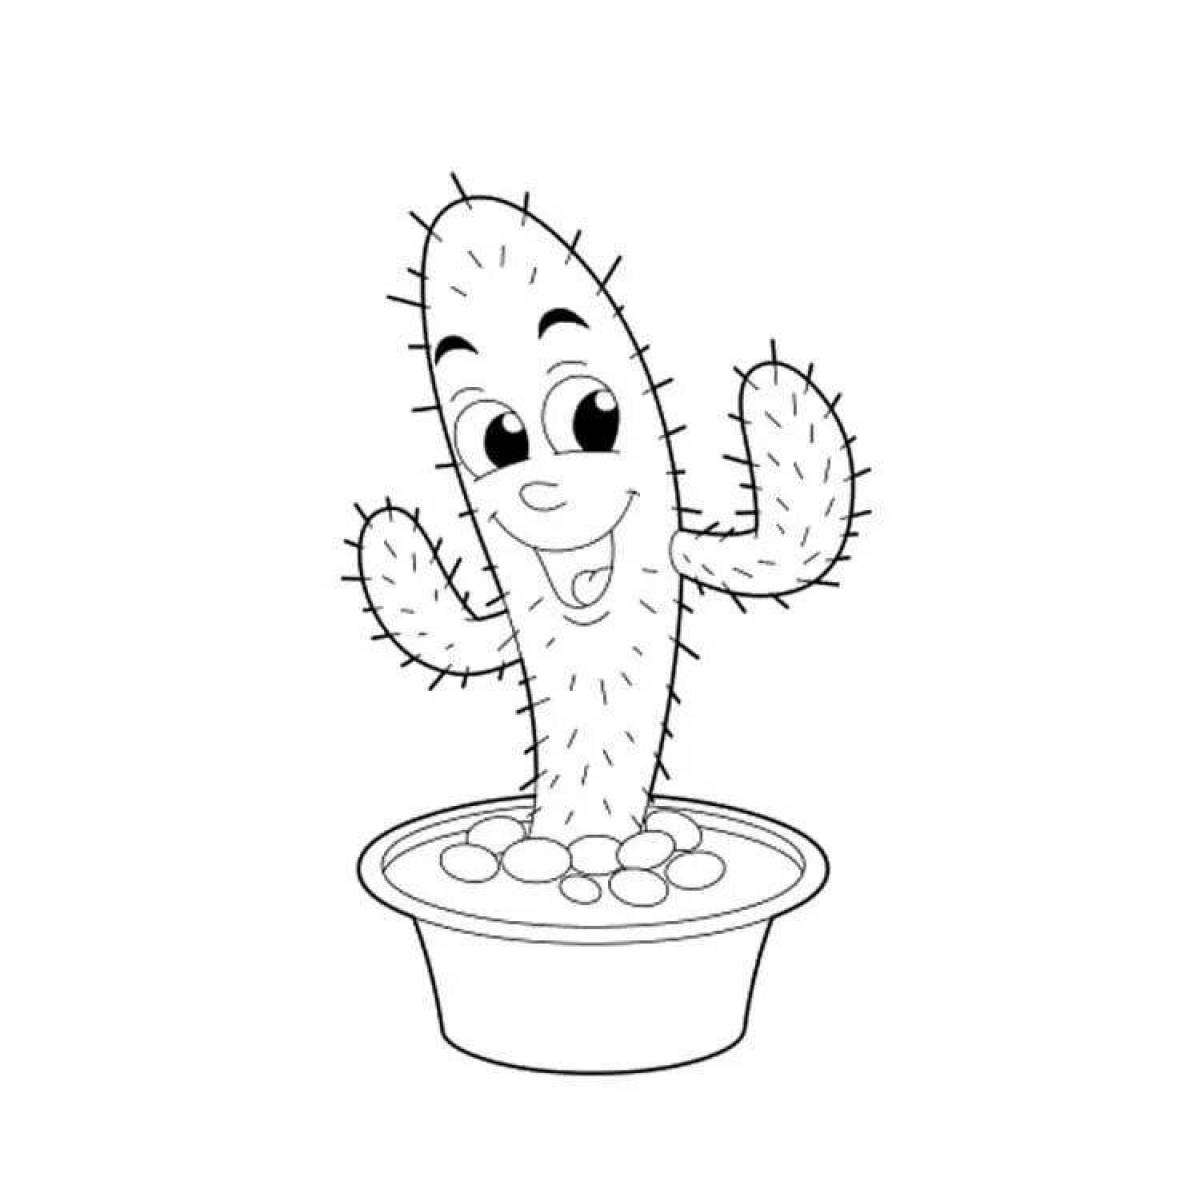 Cactus fun coloring for kids